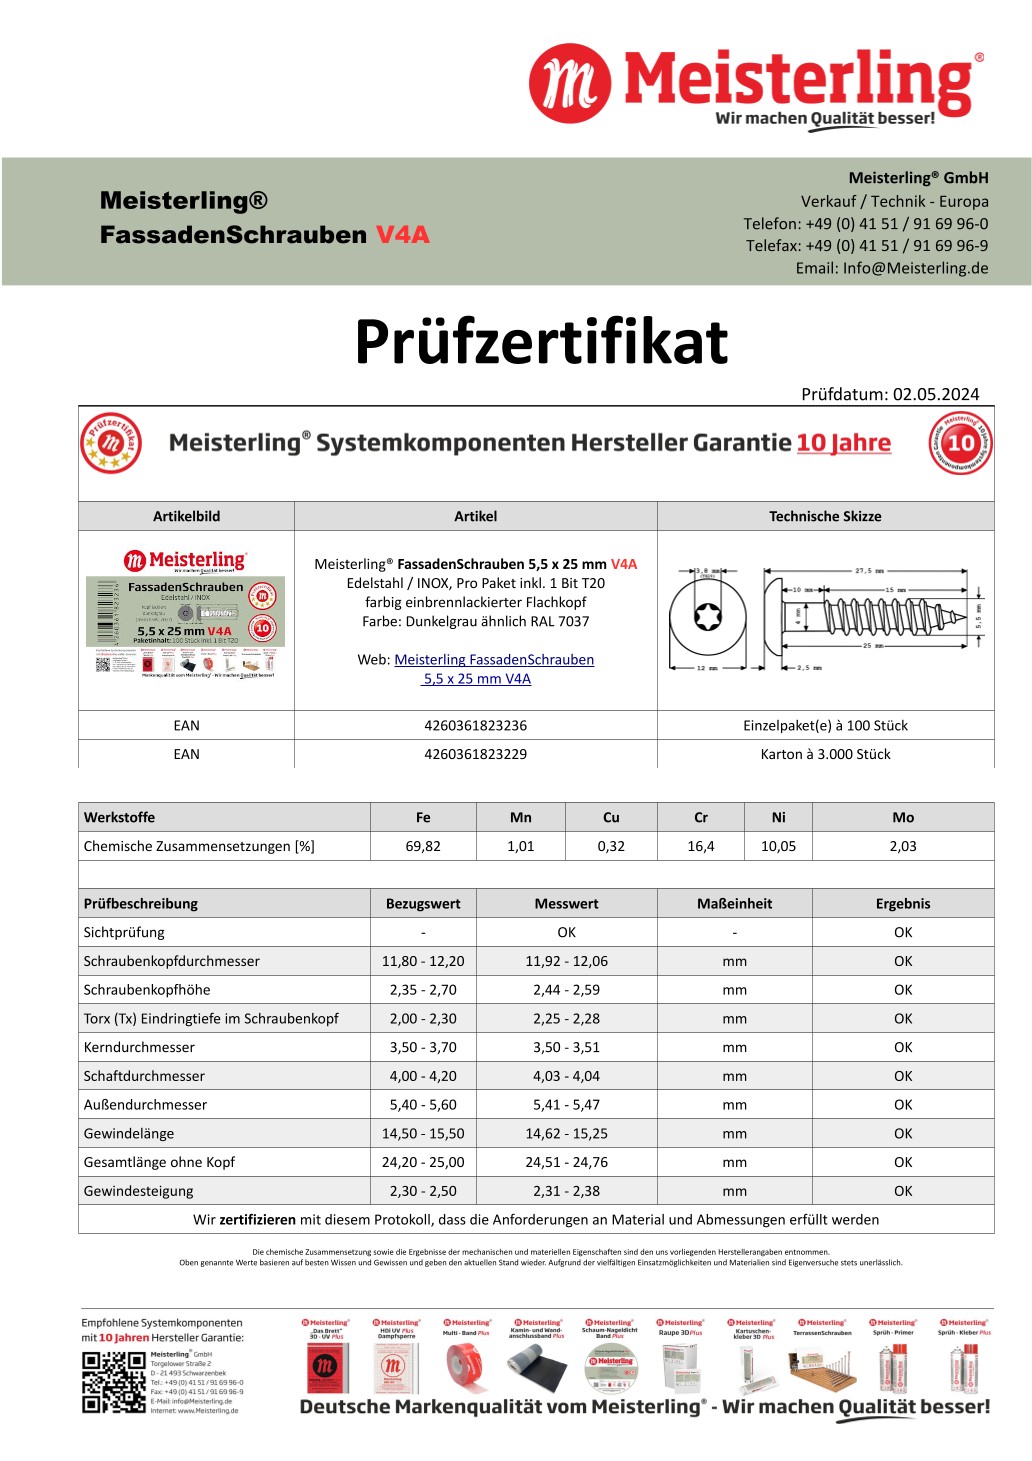 Prüfzertifikat Meisterling® FassadenSchrauben 5,5 x 25 mm V4a dunkelgrau